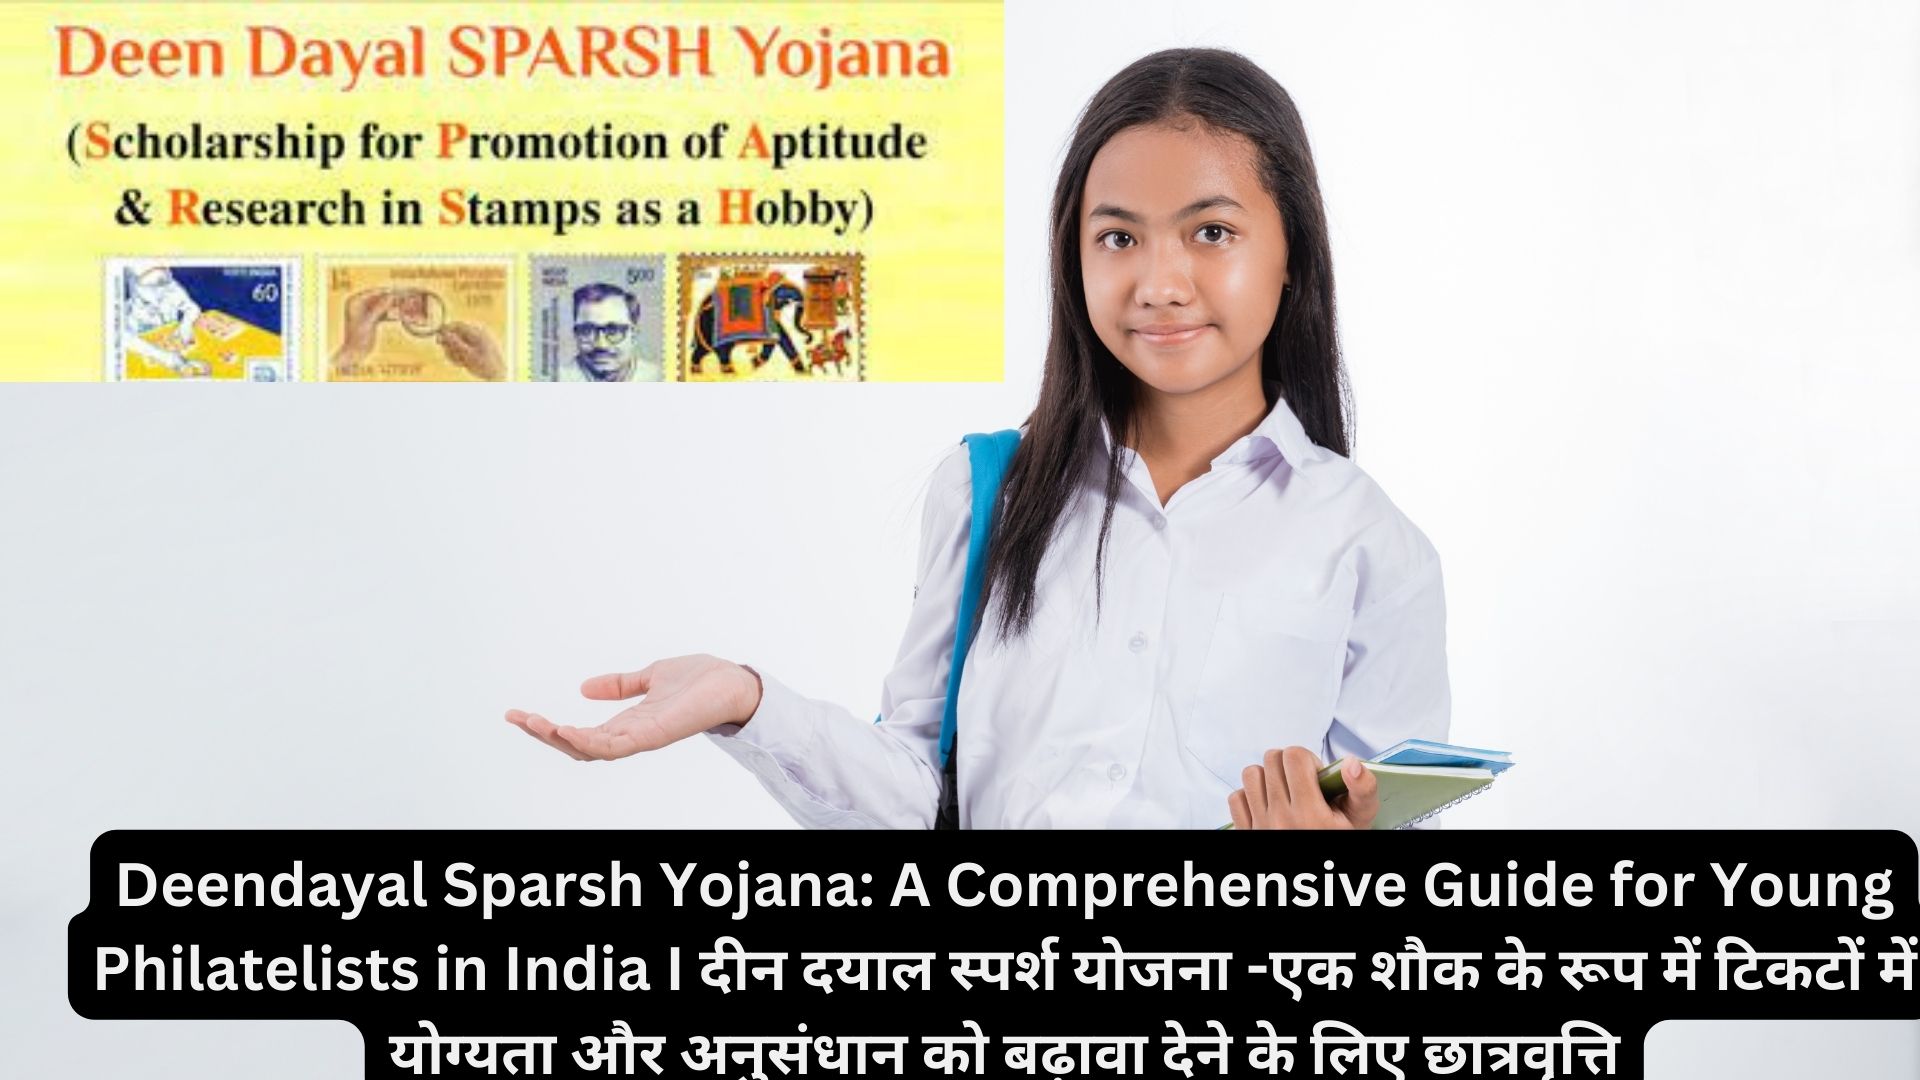 Deendayal Sparsh Yojana: A Comprehensive Guide for Young Philatelists in India I दीन दयाल स्पर्श योजना -एक शौक के रूप में टिकटों में योग्यता और अनुसंधान को बढ़ावा देने के लिए छात्रवृत्ति